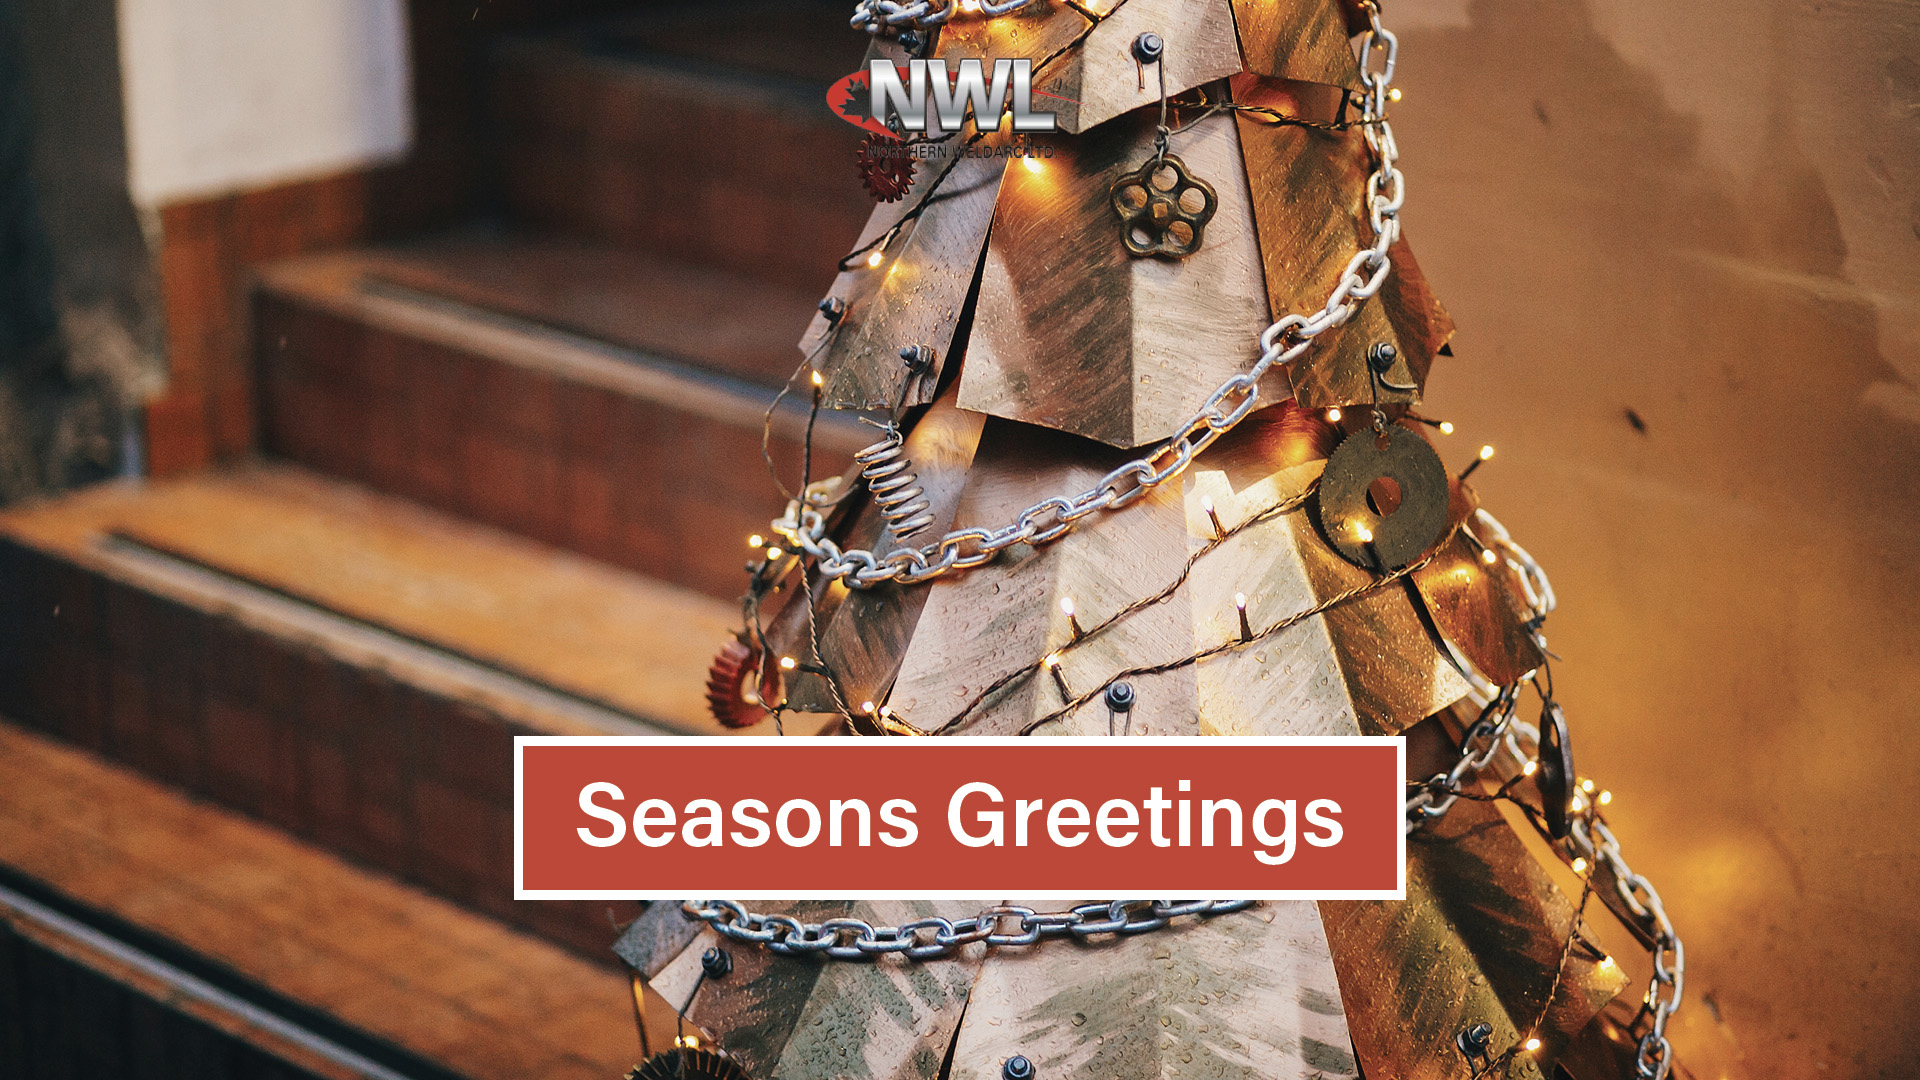 nwl-seasons-greetings.jpg